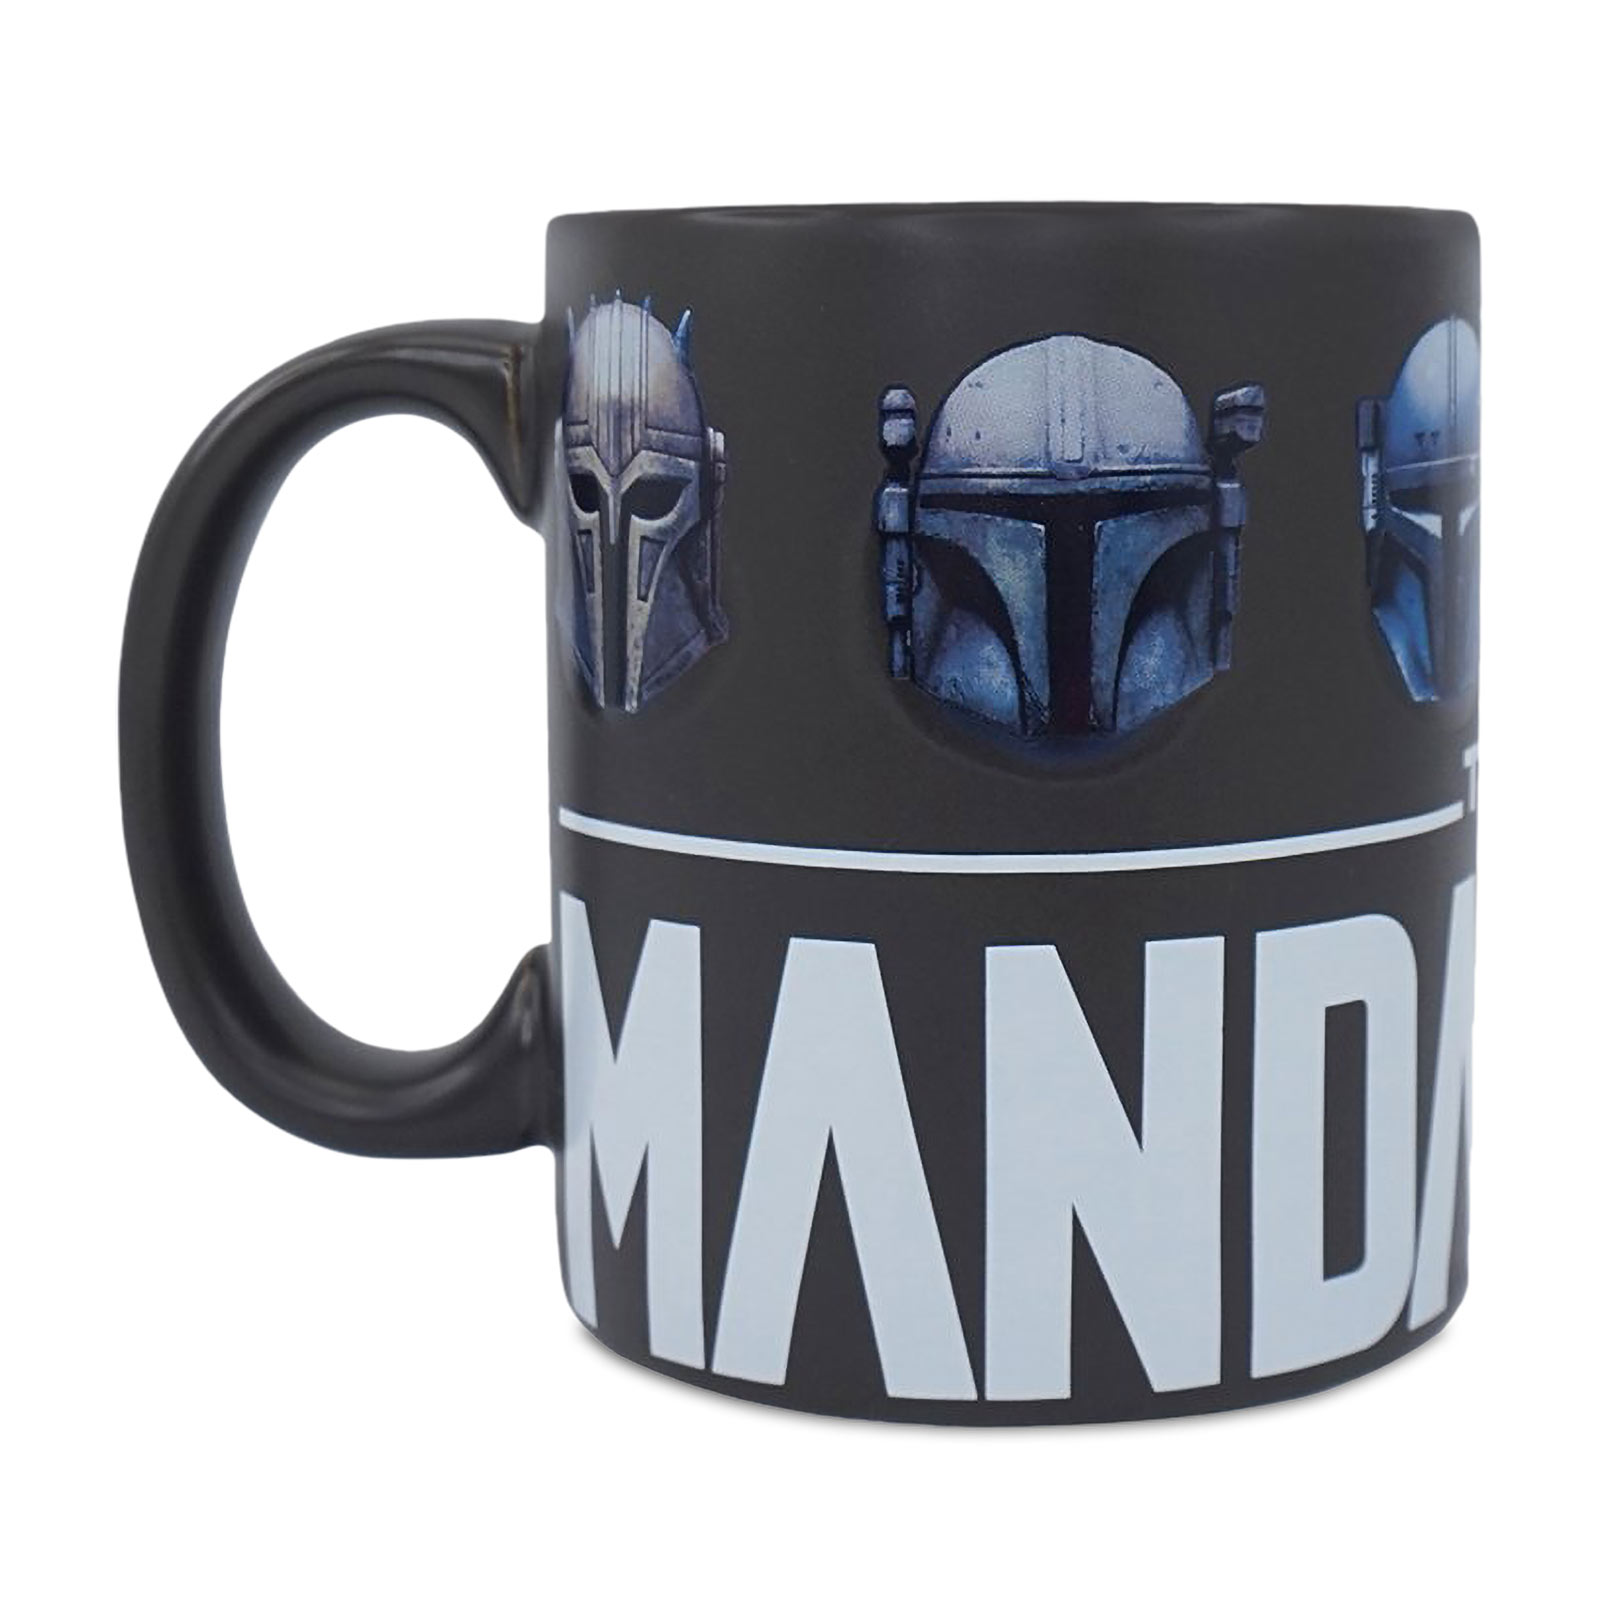 Mandalorian Helmet Mug - Star Wars The Mandalorian